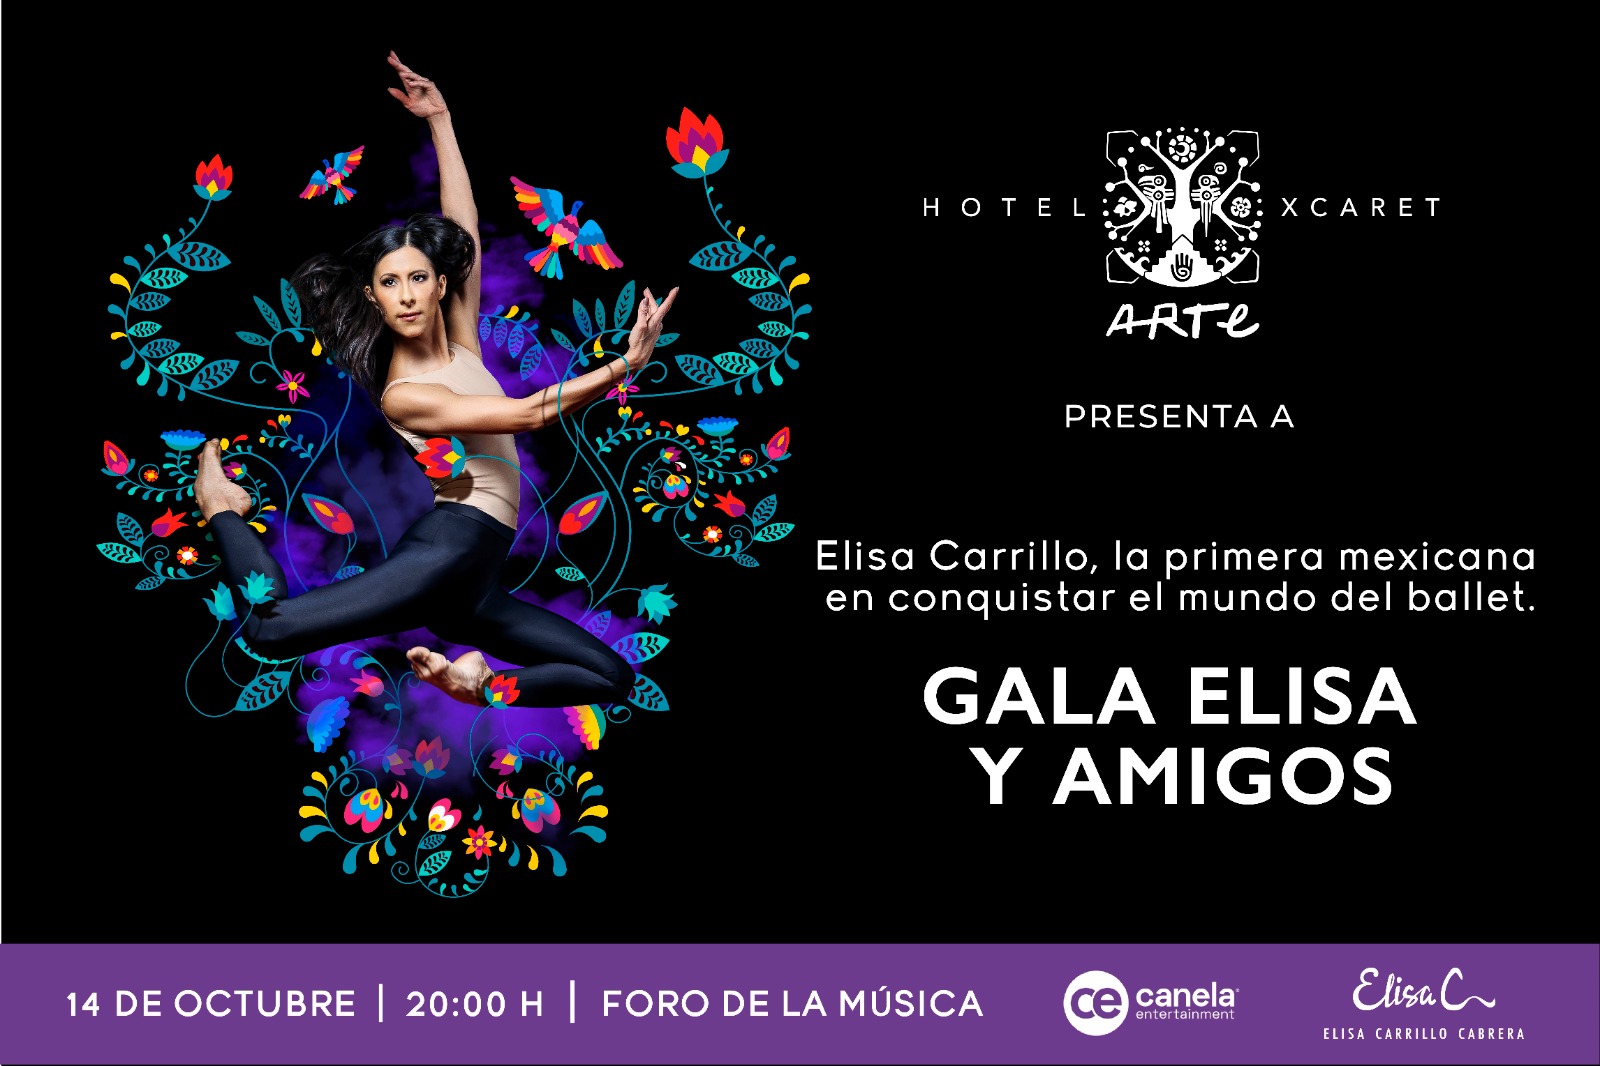 Hotel Xcaret Arte celebra la grandeza de la danza y el arte con la Gala Elisa y Amigos